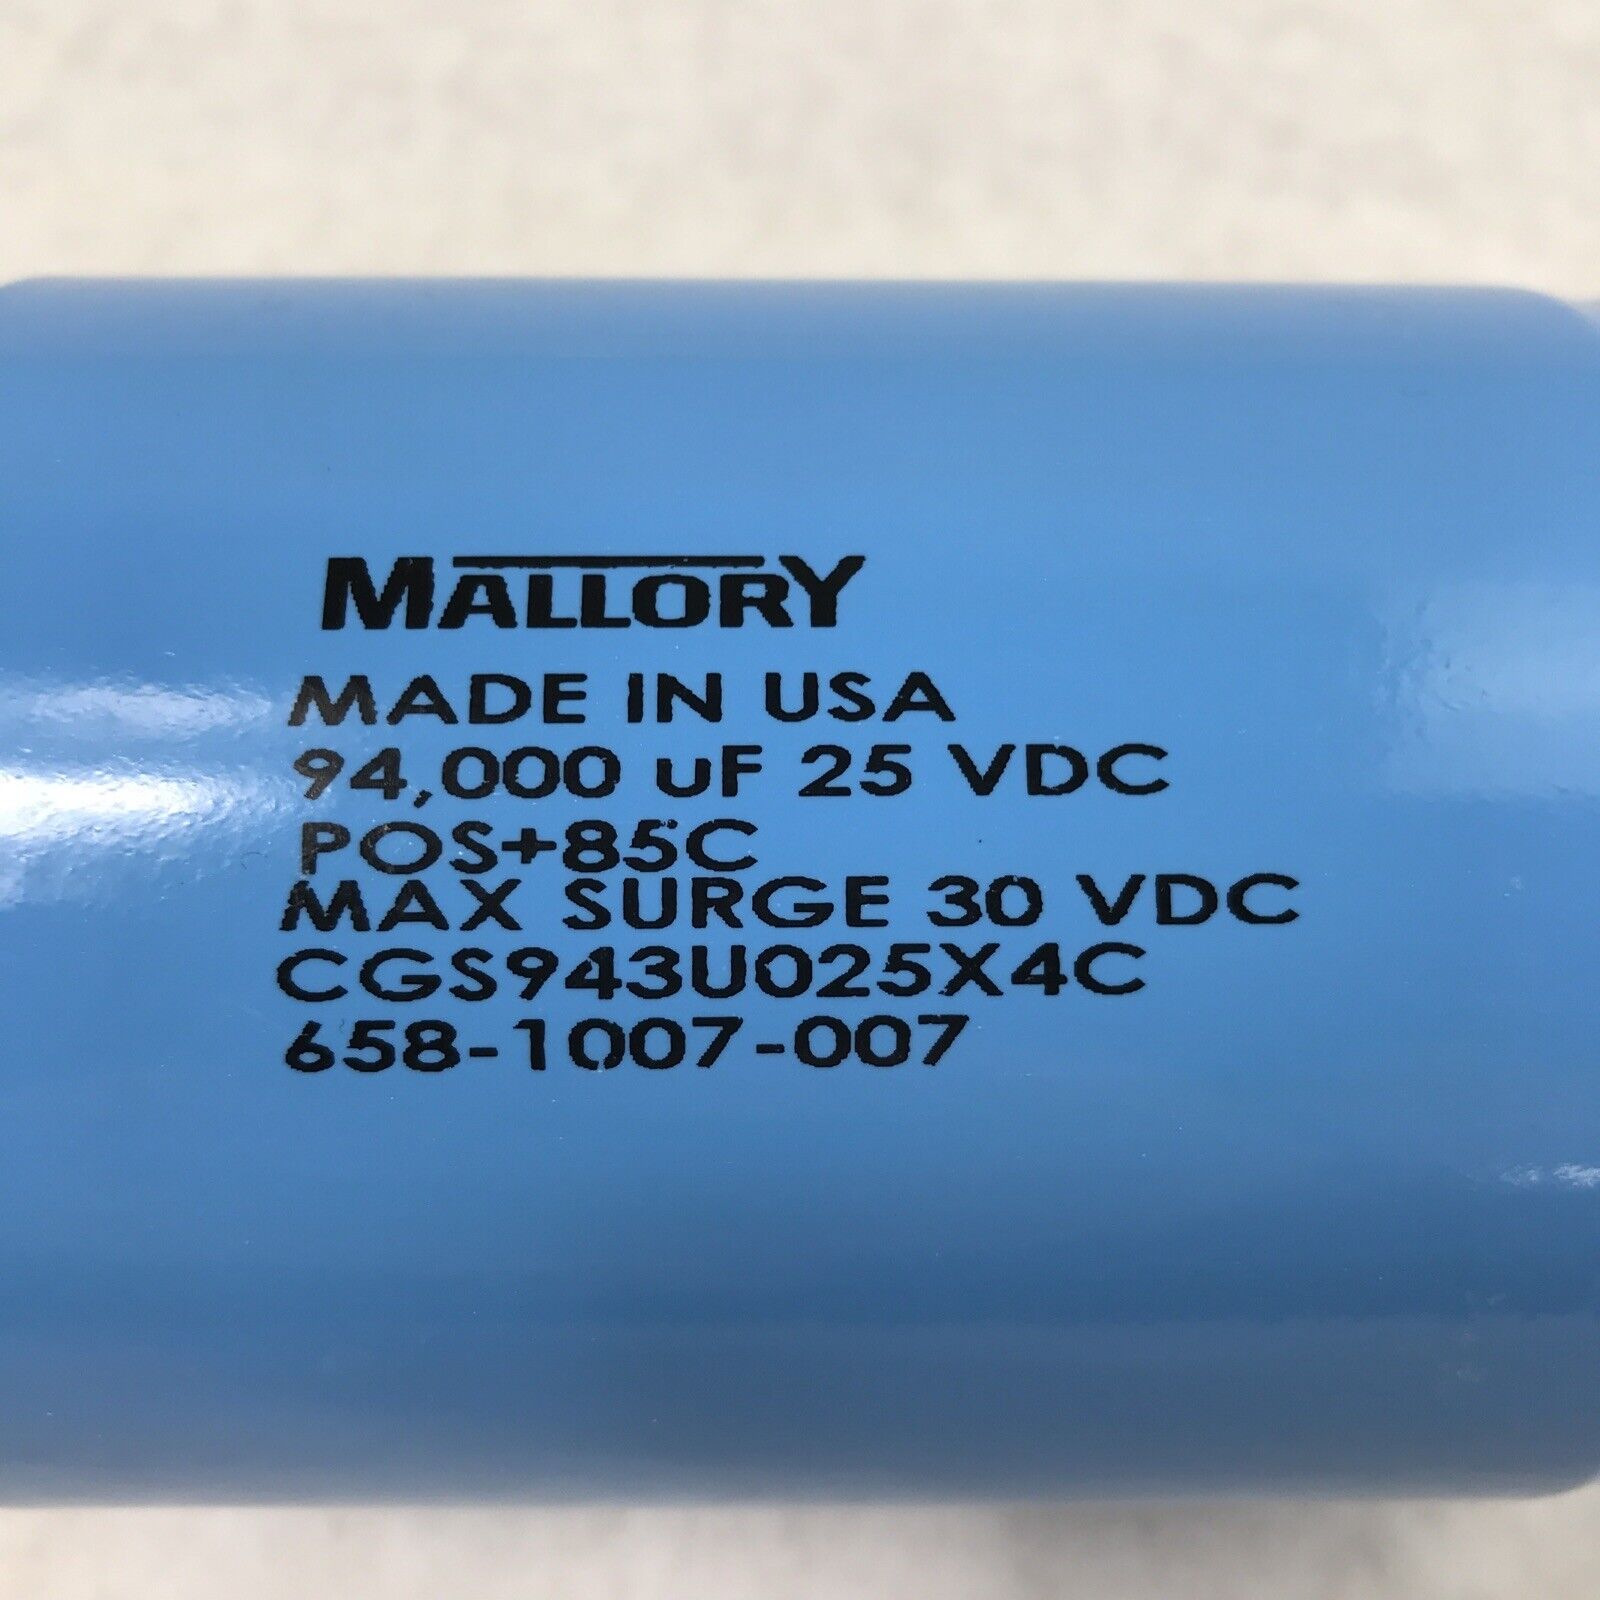 Mallory CGS943U025X4C 94000UF 25 VDC Max Surge 30 VDC Capacitor